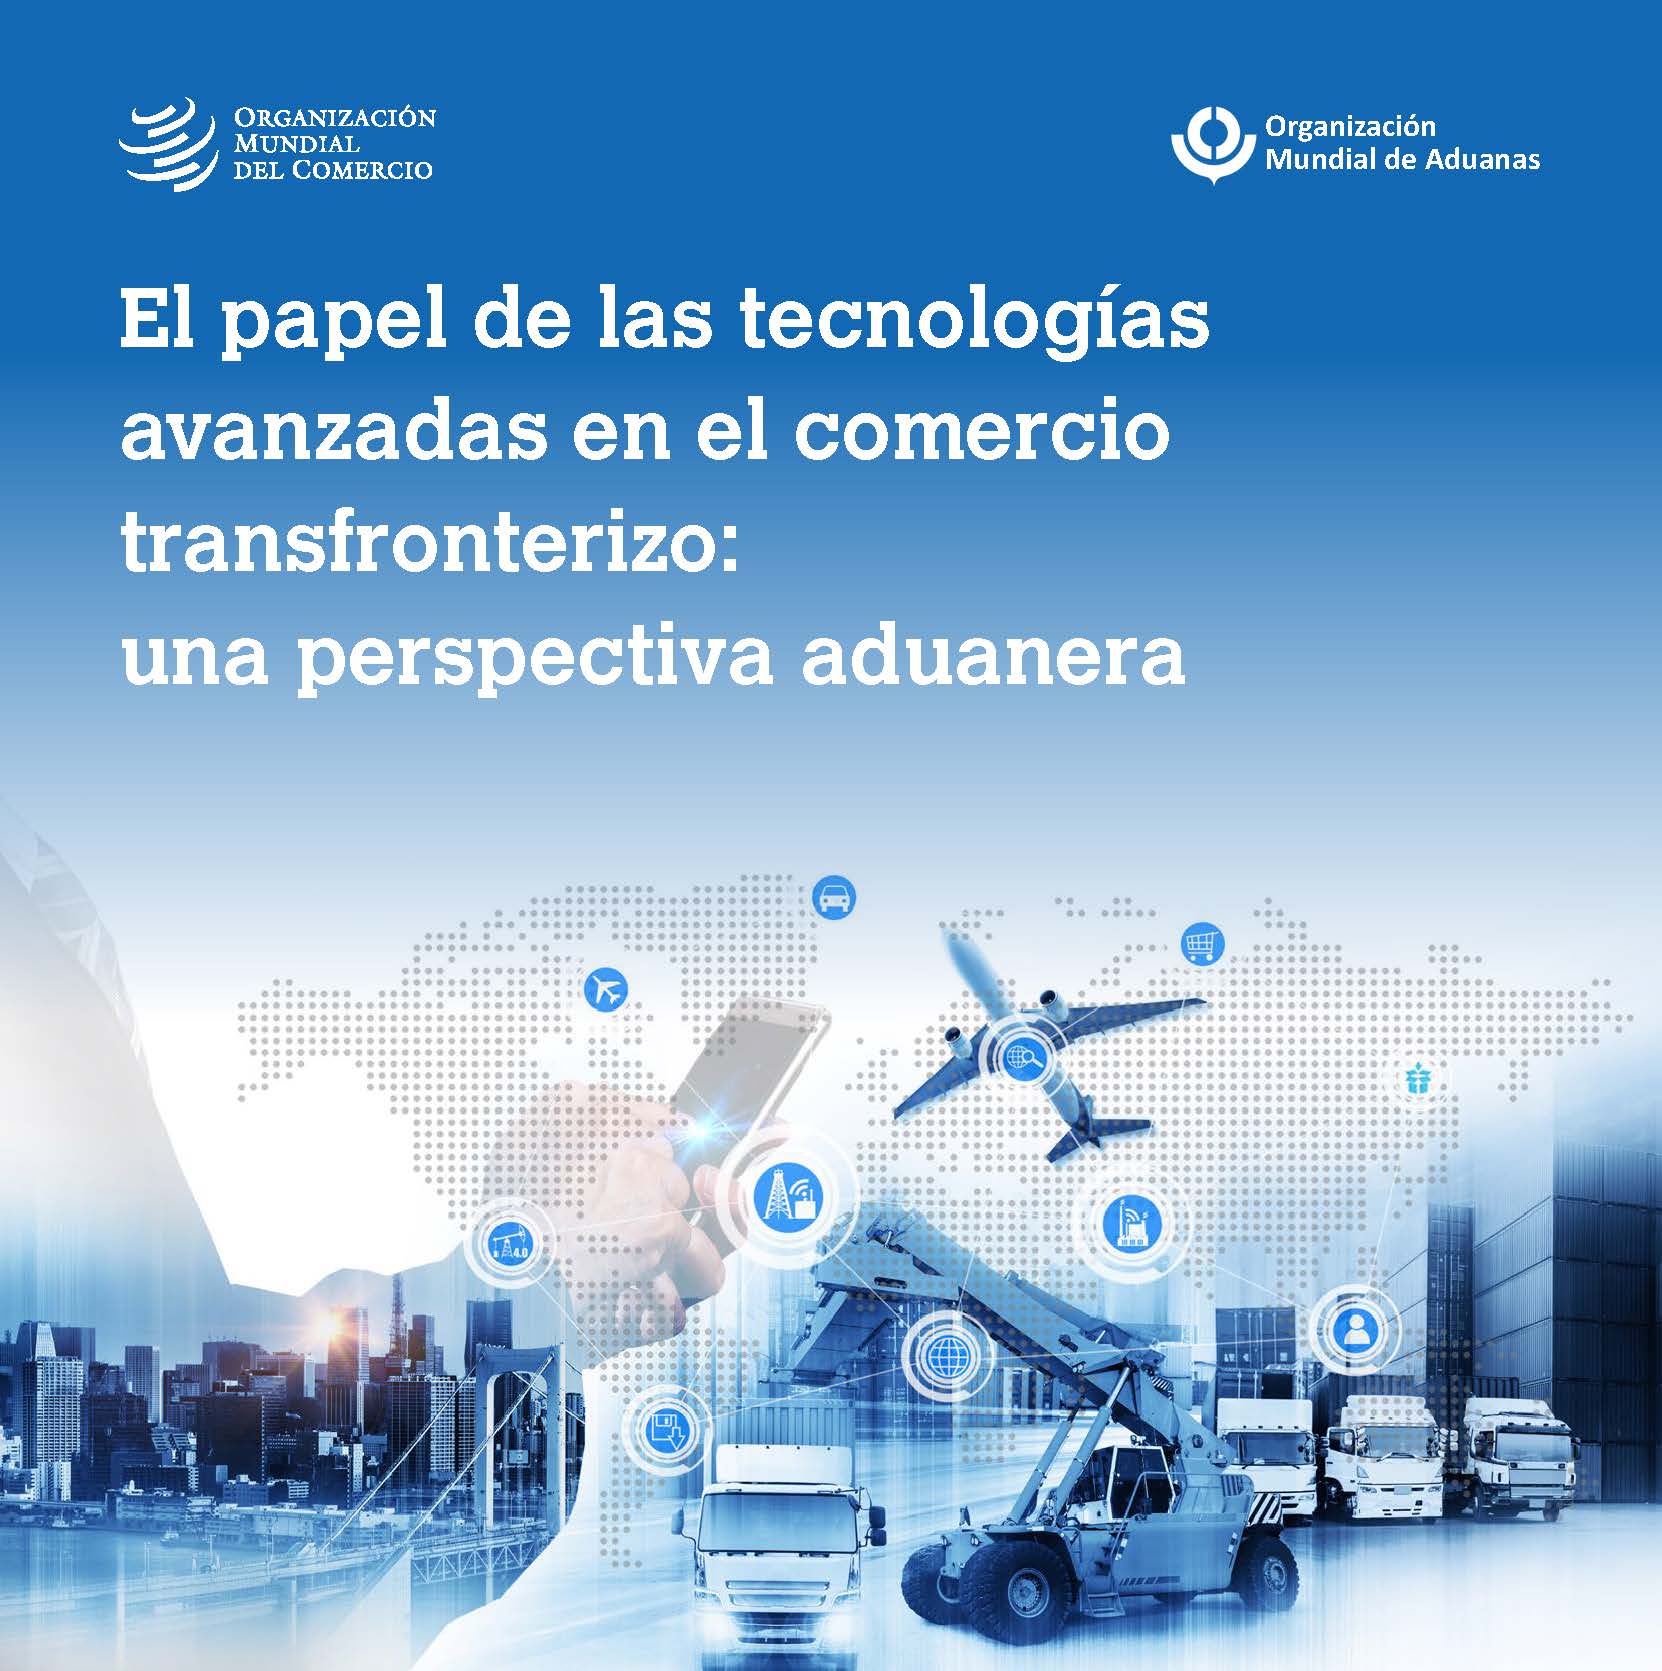 image of Asegurar el comercio transfronterizo con la utilización de tecnologías avanzadas